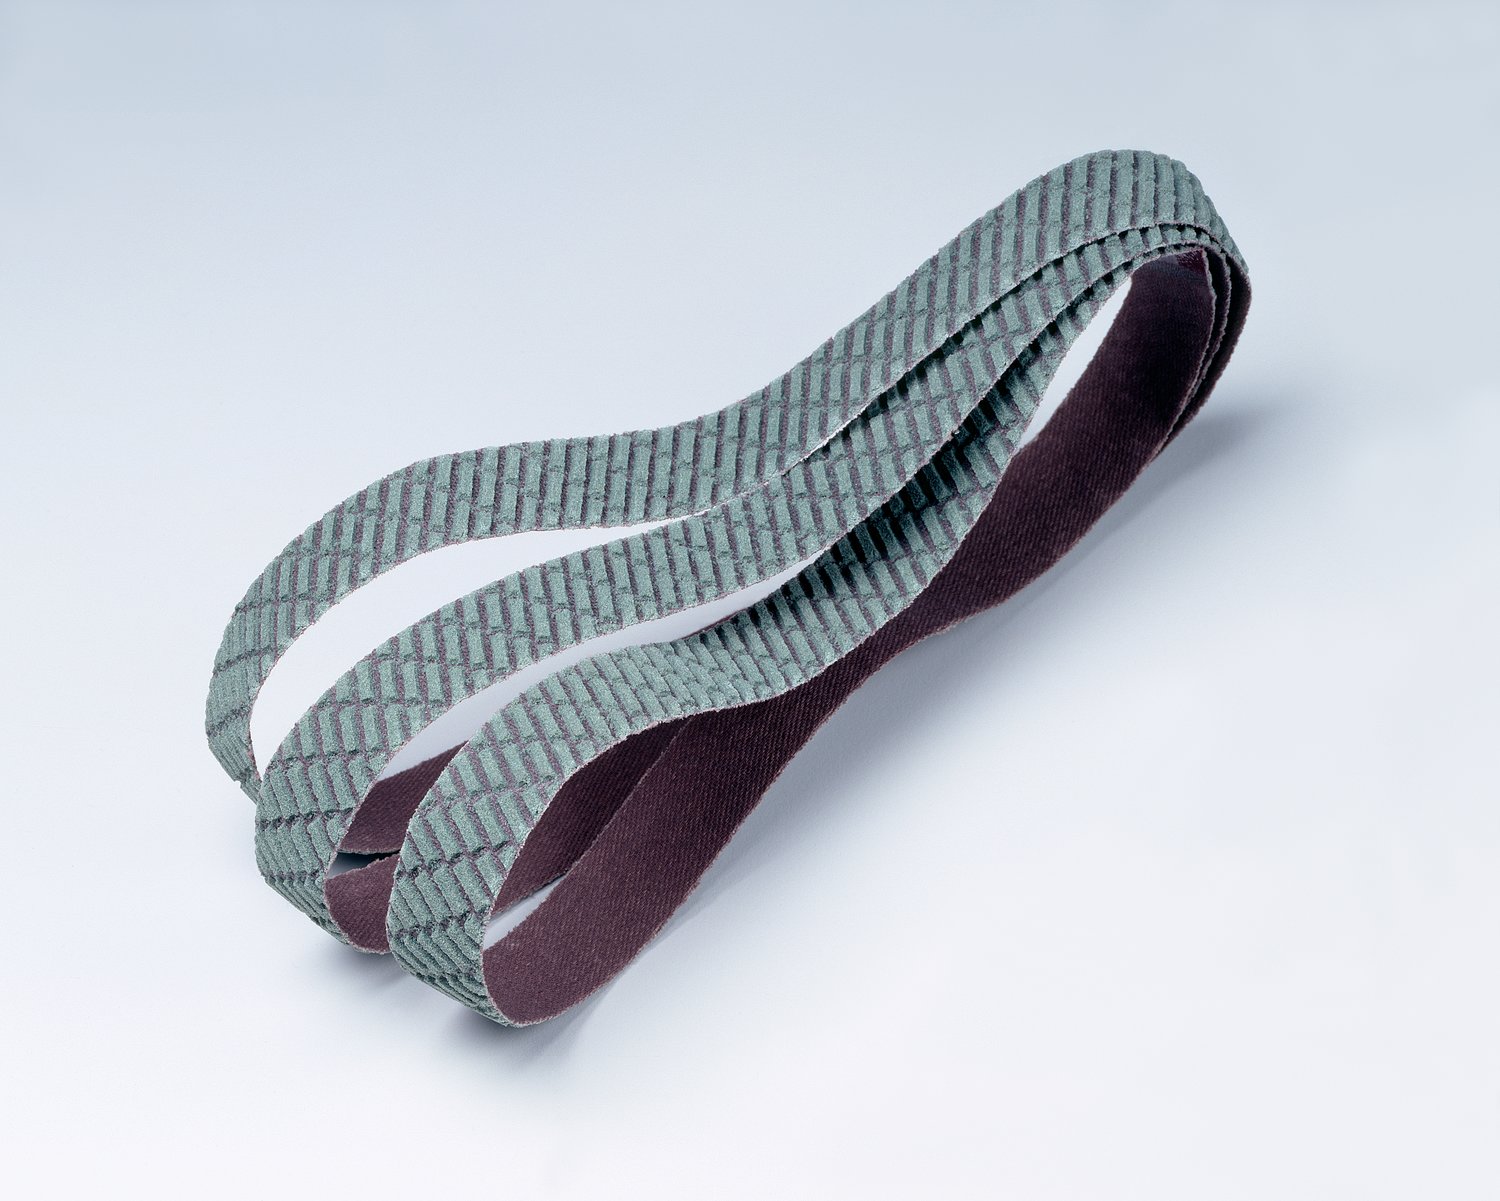 7010516948 - 3M Trizact Cloth Belt 327DC, A45 X-weight, 24 in x 103 in, Film-lok,
No Flex